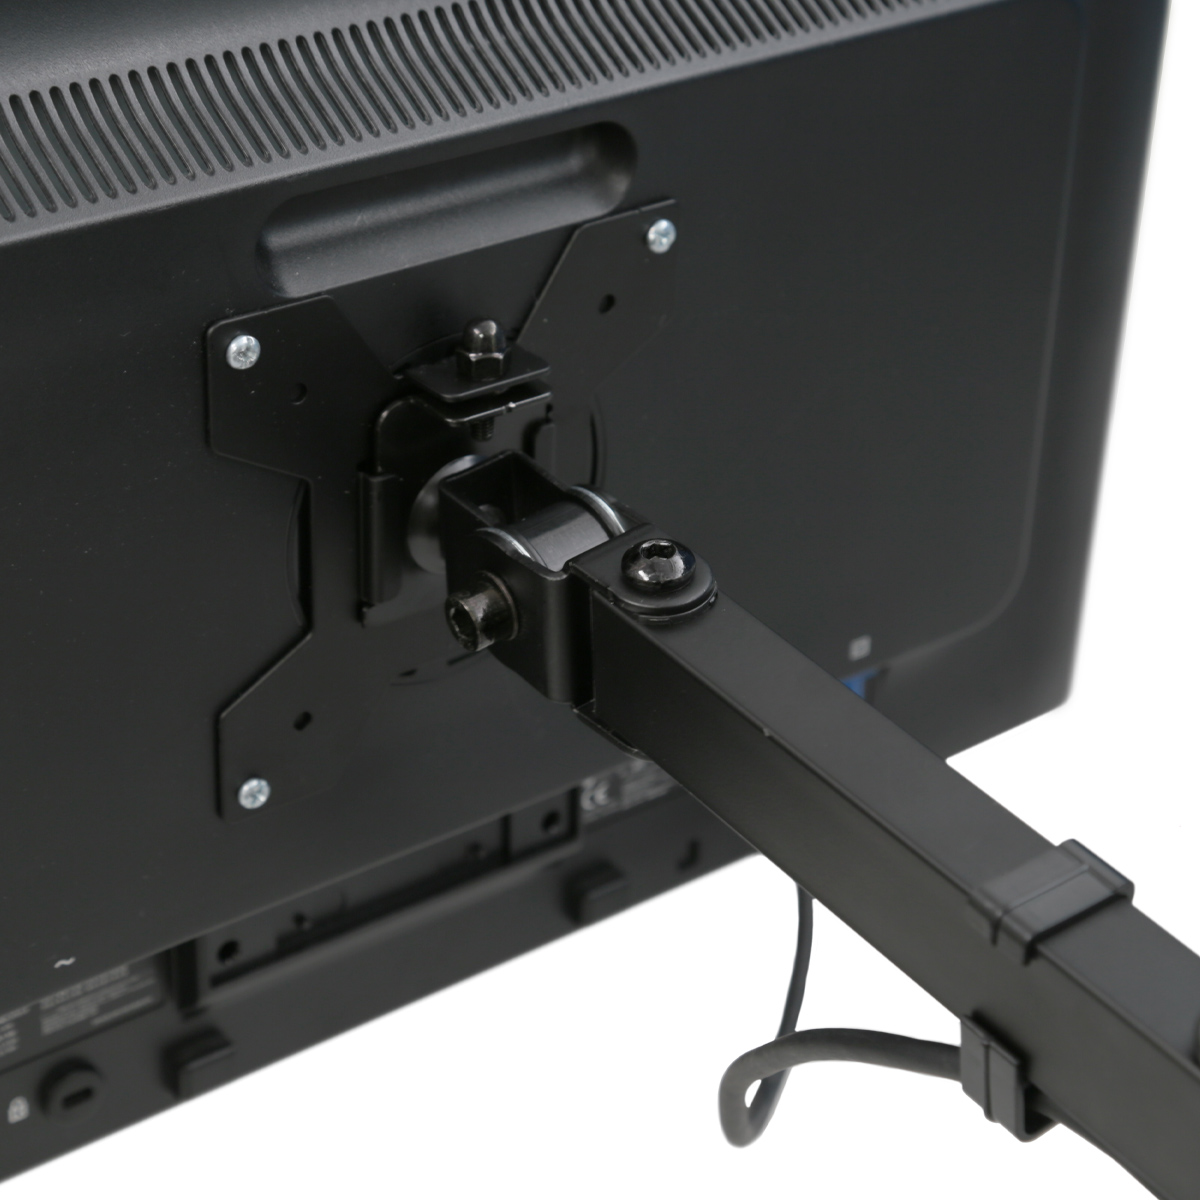 ディスプレイボード モニタシェルフ テレビにも取付可能 無段階角度調整 オフィス ホーム テレワークのデスク周りの収納に 取付簡単 支柱角度調整可 DPRK3316